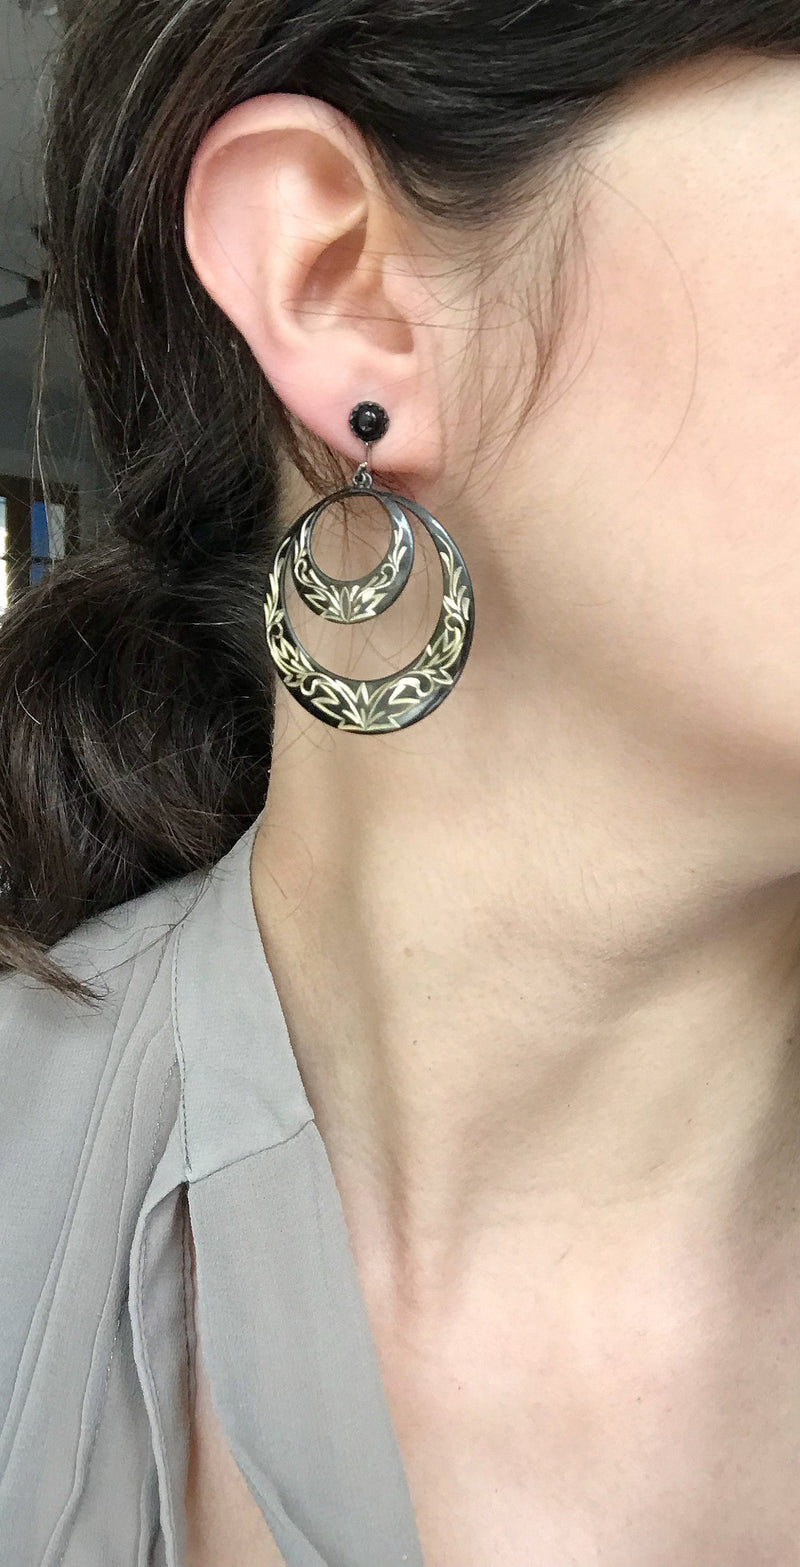 Vintage niello screw back hoop earrings | 1940's large statement etched 950 silver earrings | double hoop flower black nielloware earrings